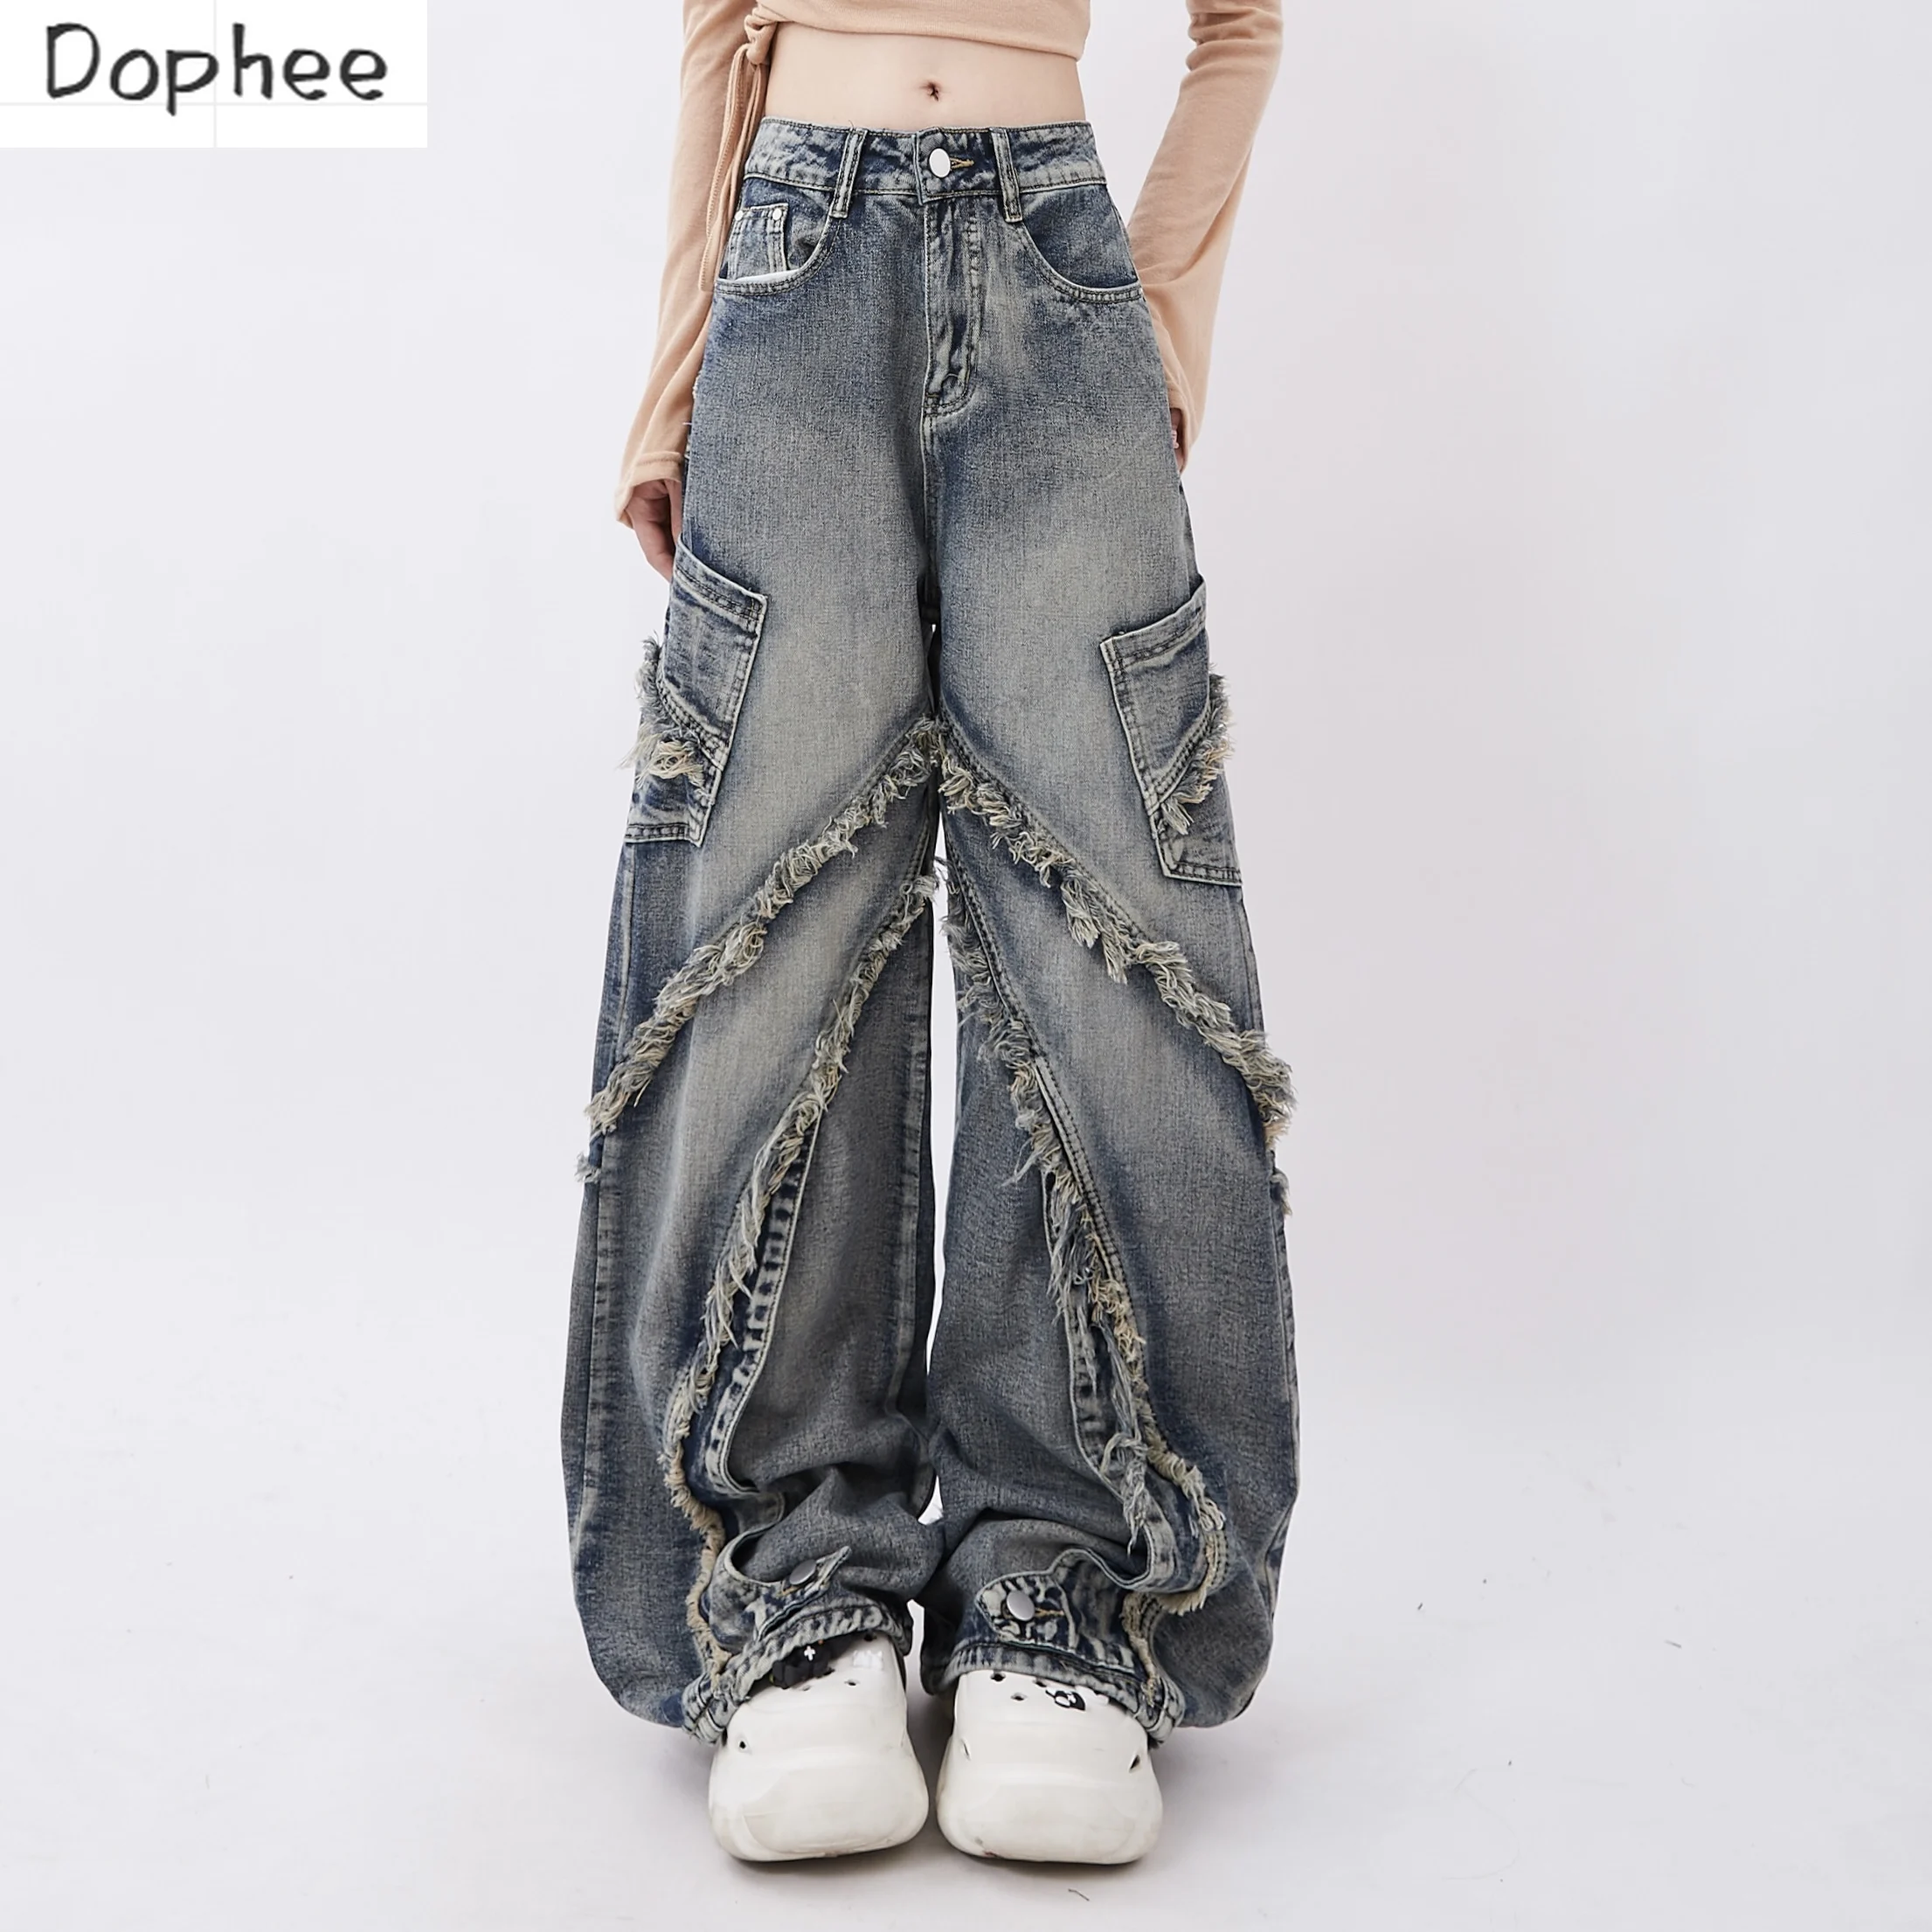 Джинсы-dophee-для-женщин-новинка-Осенние-винтажные-прямые-брюки-с-бахромой-подходящие-ко-всему-уличная-одежда-для-девушек-свободные-джинсовые-брюки